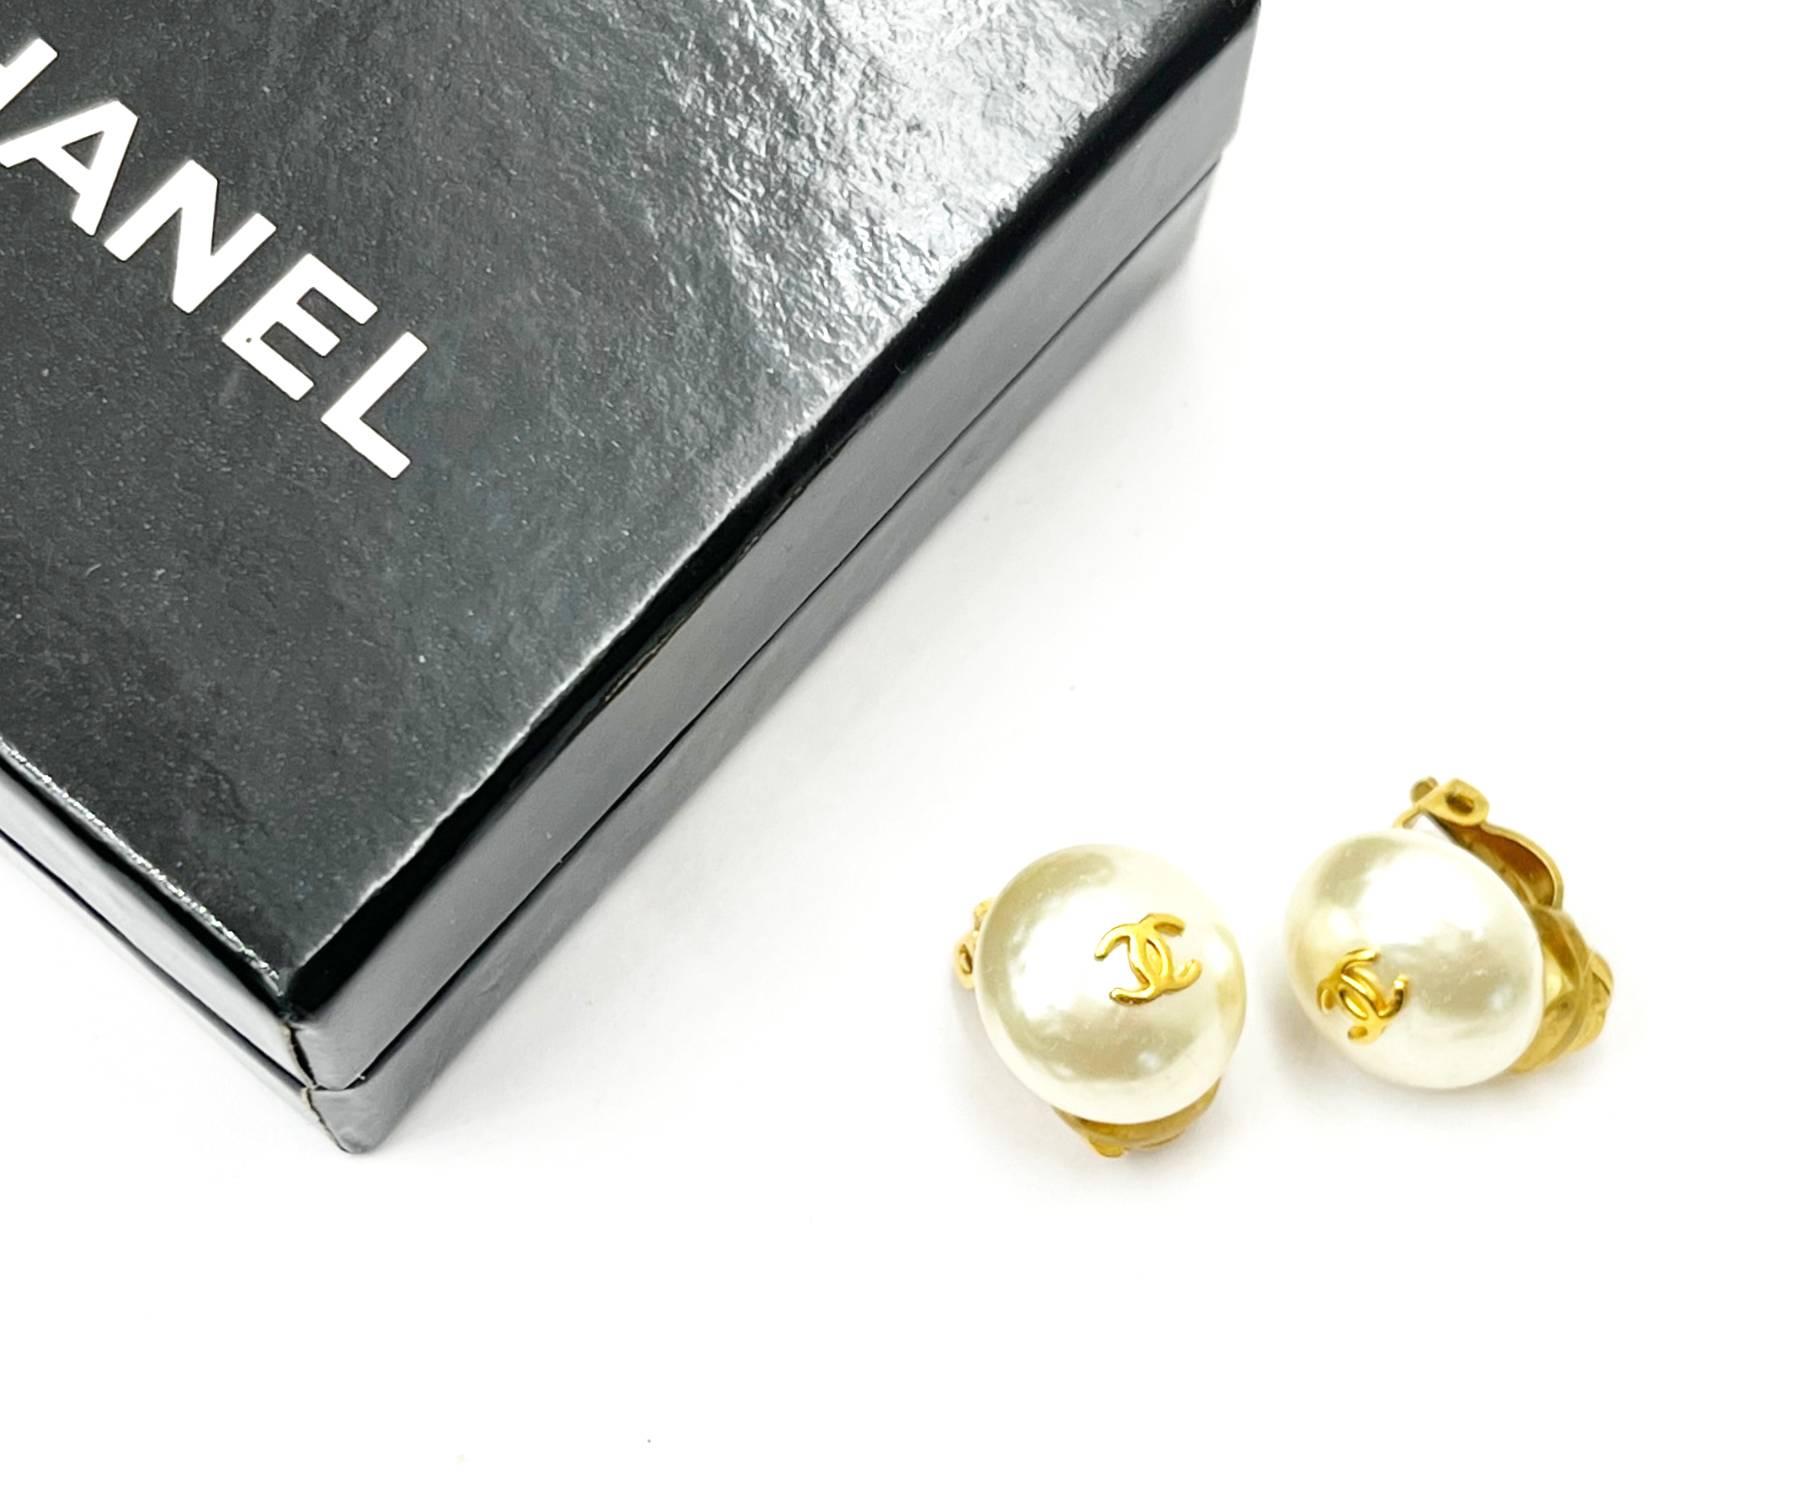 Chanel Klassisch Vergoldet CC Kleine Perlen Ohrringe mit Clip

*Markierung 95
*Hergestellt in Frankreich
*Kommt mit dem Originalkarton

-Ungefähr 0,55